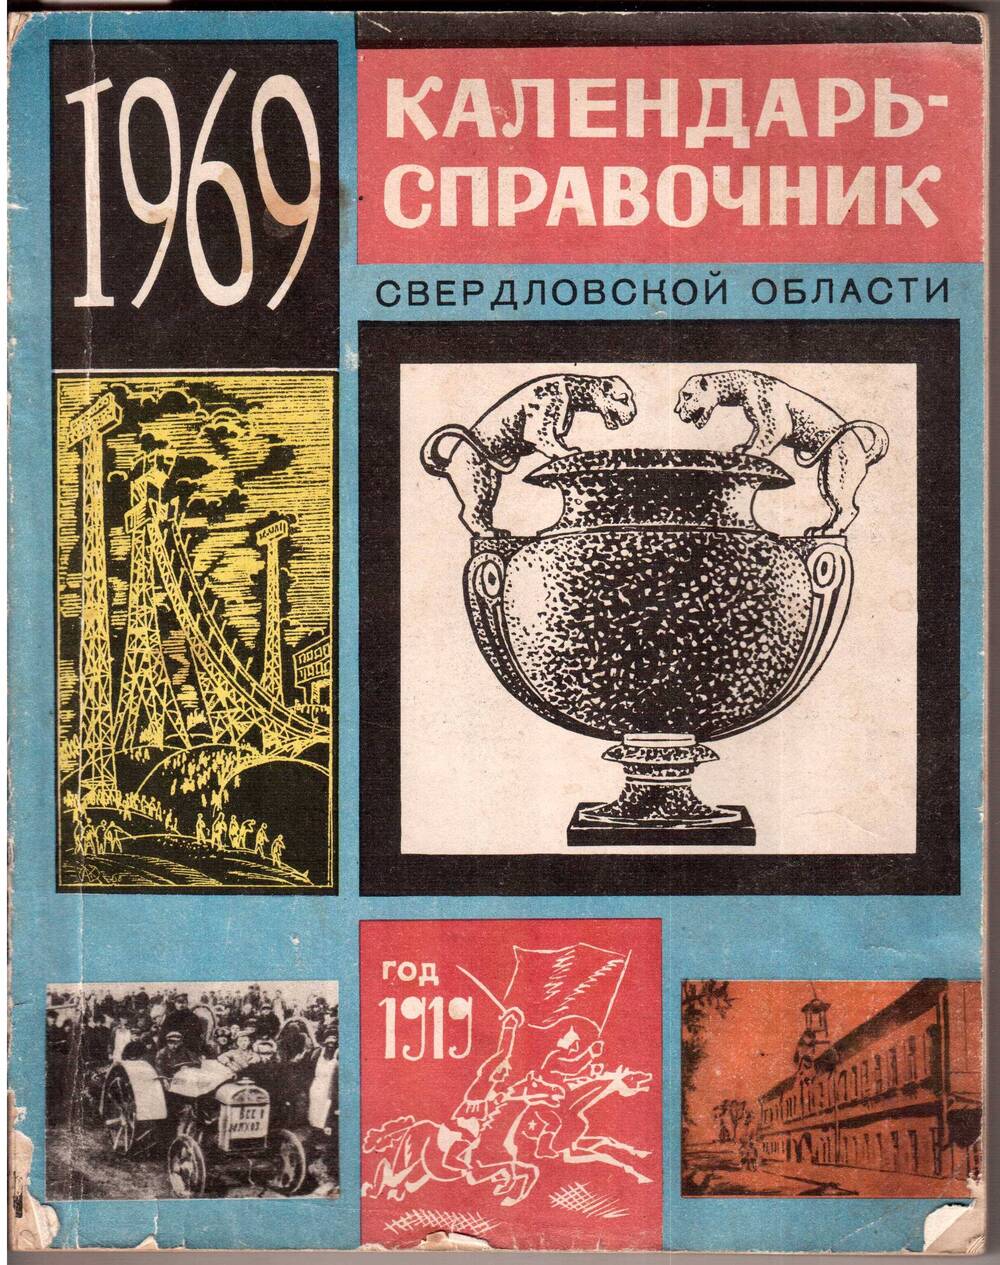 Календарь - справочник Свердловской области. 1969